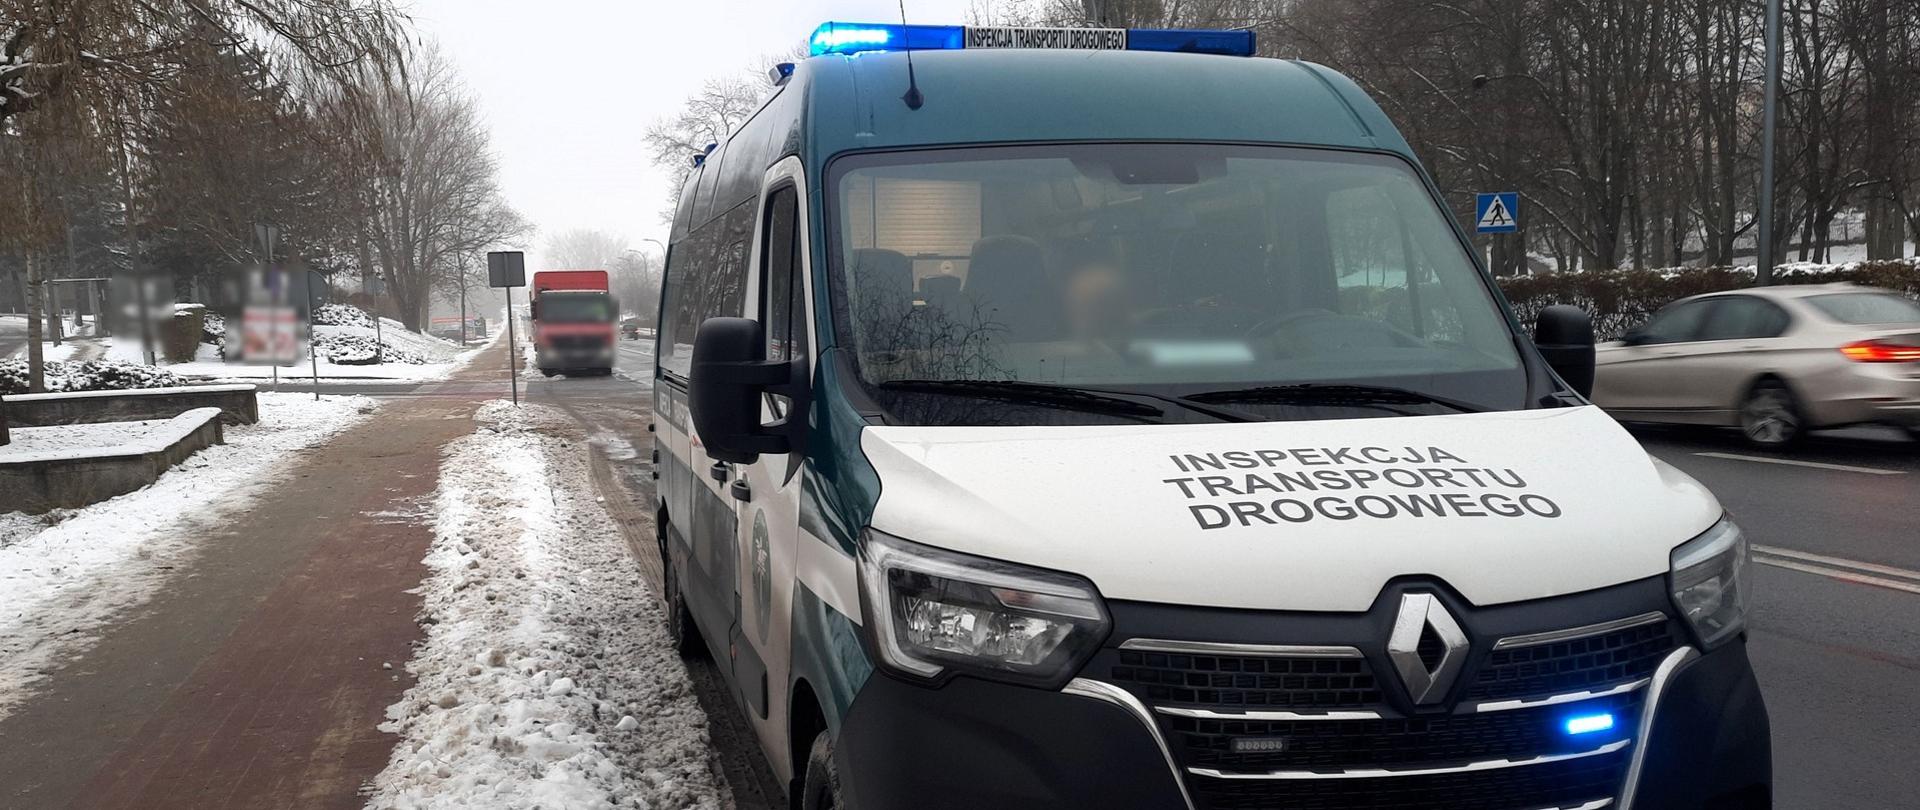 Kontrola pojazdu ciężarowego na Trasie Warszawskiej (nad rzeką Wartą) w Koninie. Kierowca, zatrzymany przez patrol wielkopolskiej Inspekcji Transportu Drogowego, nie zastosował się do obowiązującego zakazu tonażowego.